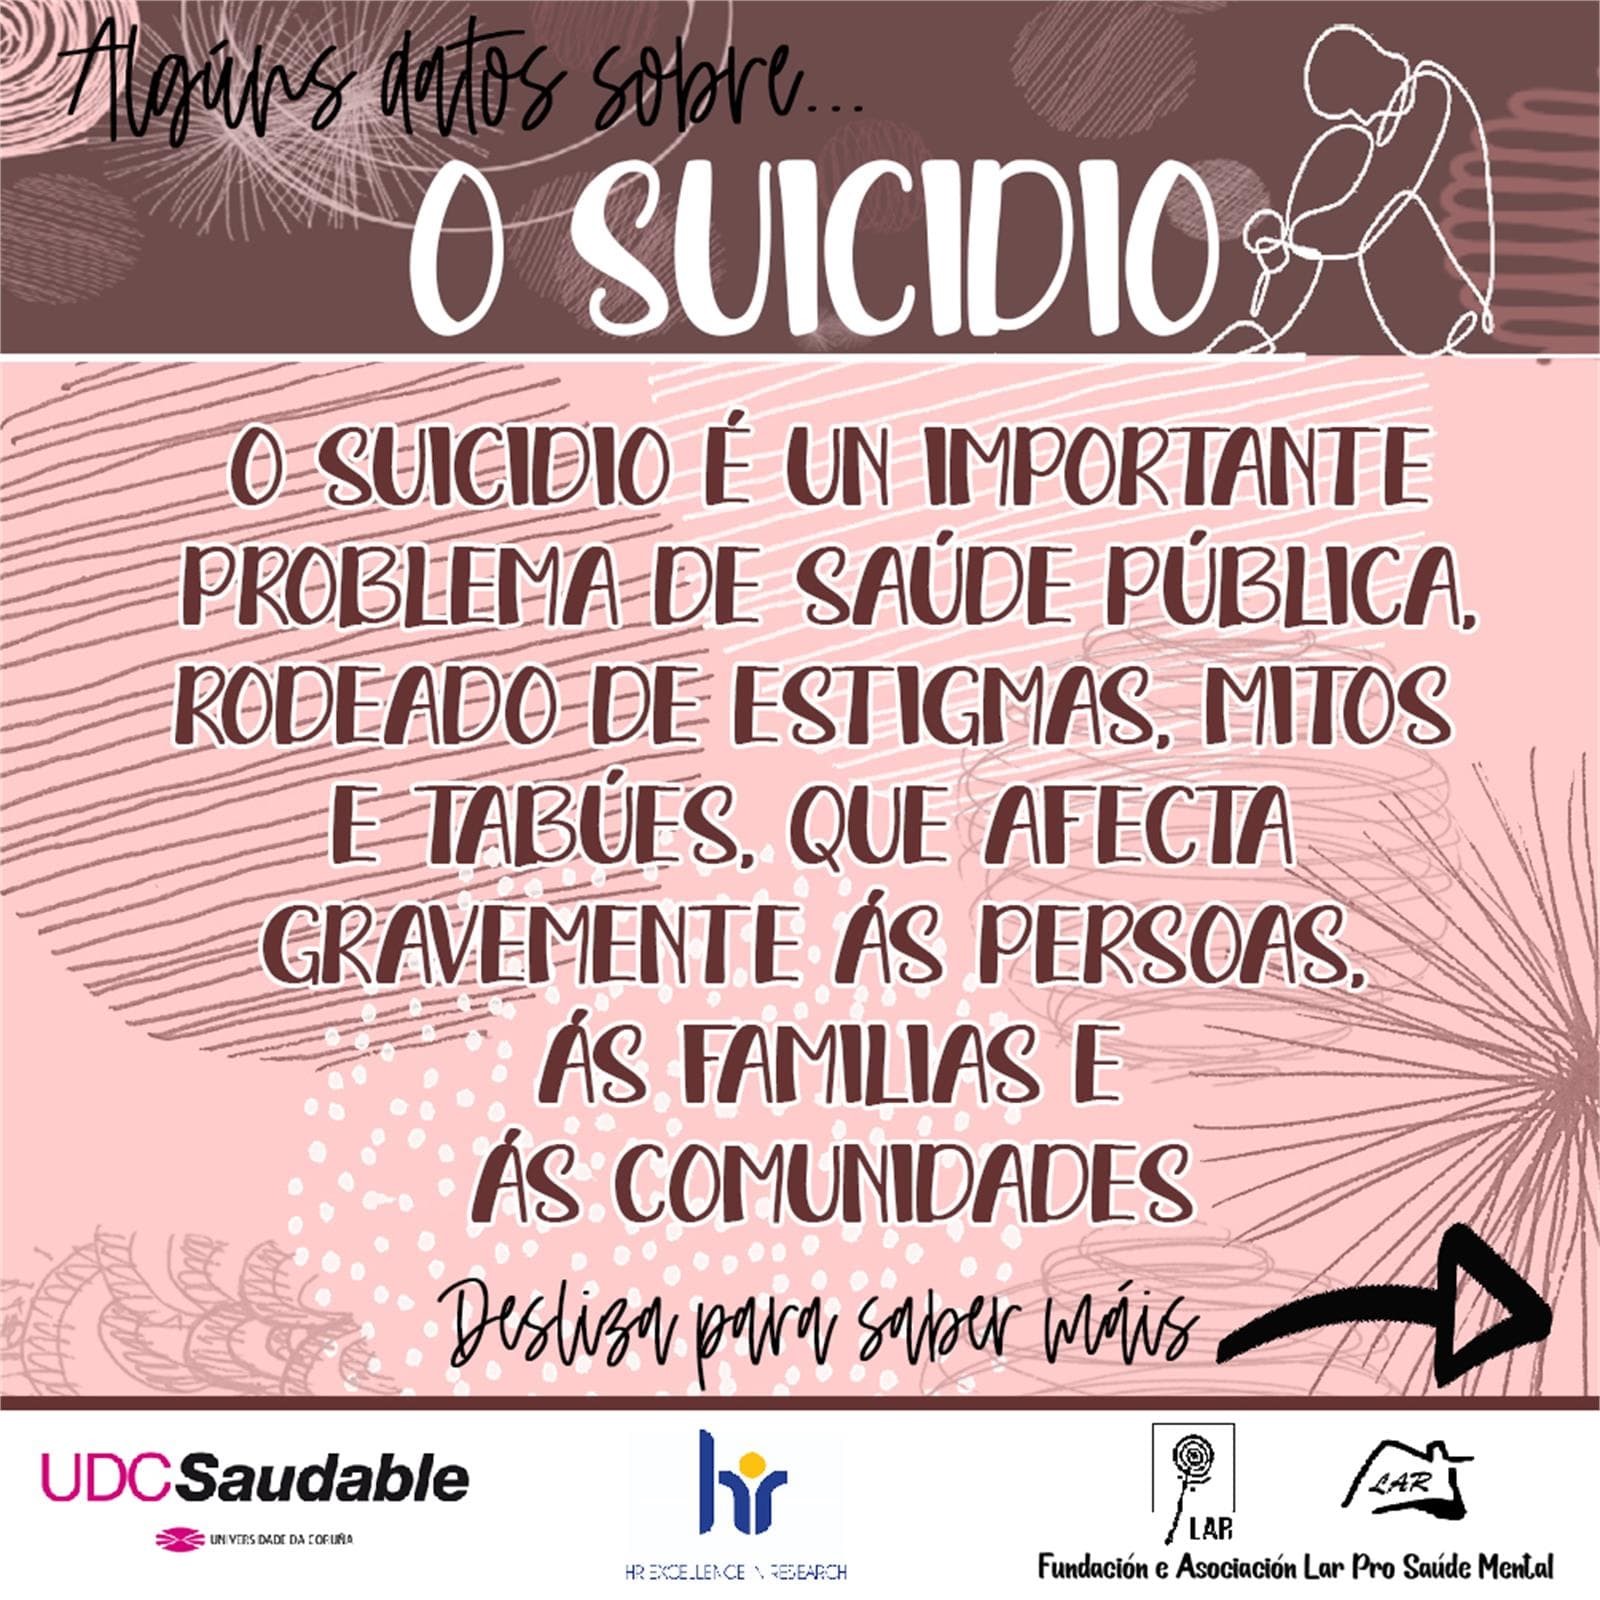 Algunos Datos sobre Suicidio... - LAR Pro Salud Mental - Imagen 1